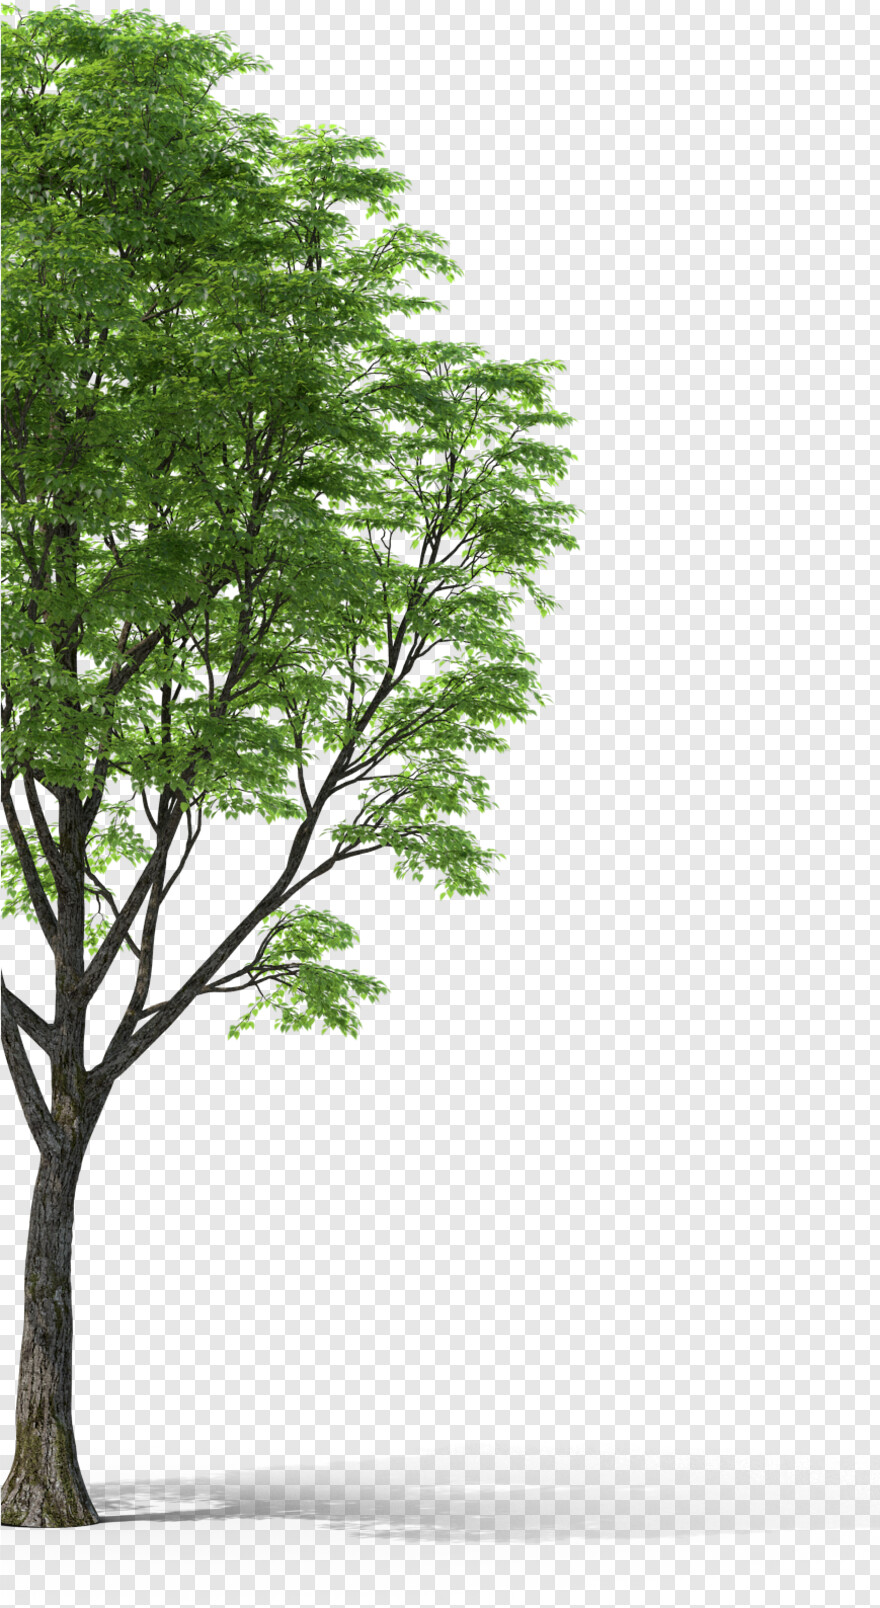 pine-tree-silhouette # 654307